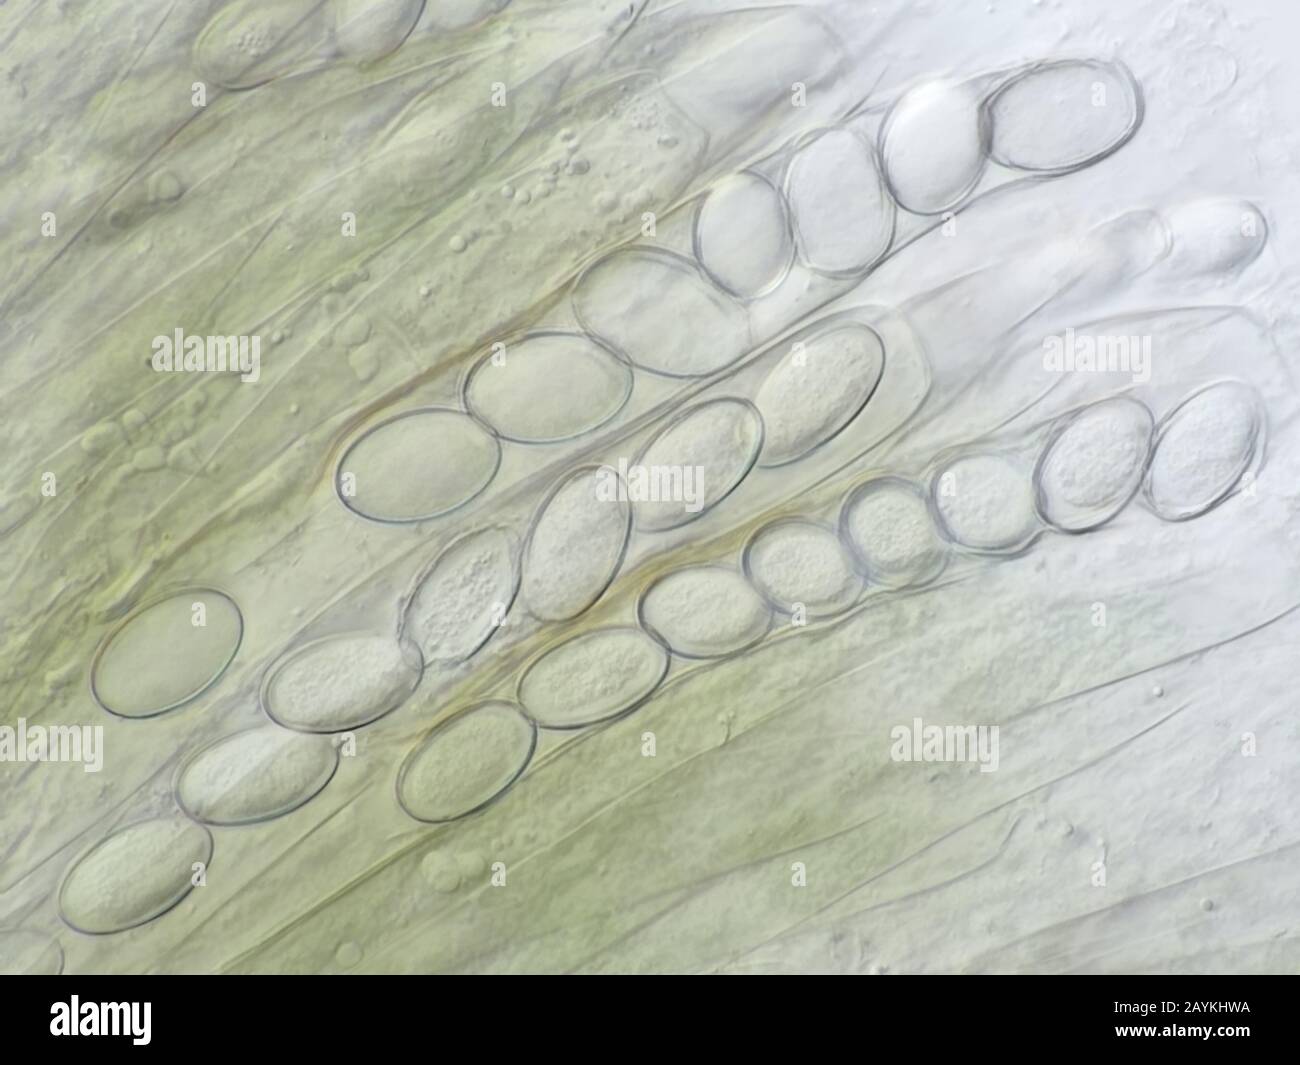 Plusieurs asci (cellules portantes de spores de champignons ascomycètes) provenant d'eau sale, photographiés à l'aide d'un objectif de microscope à huile 100× Banque D'Images